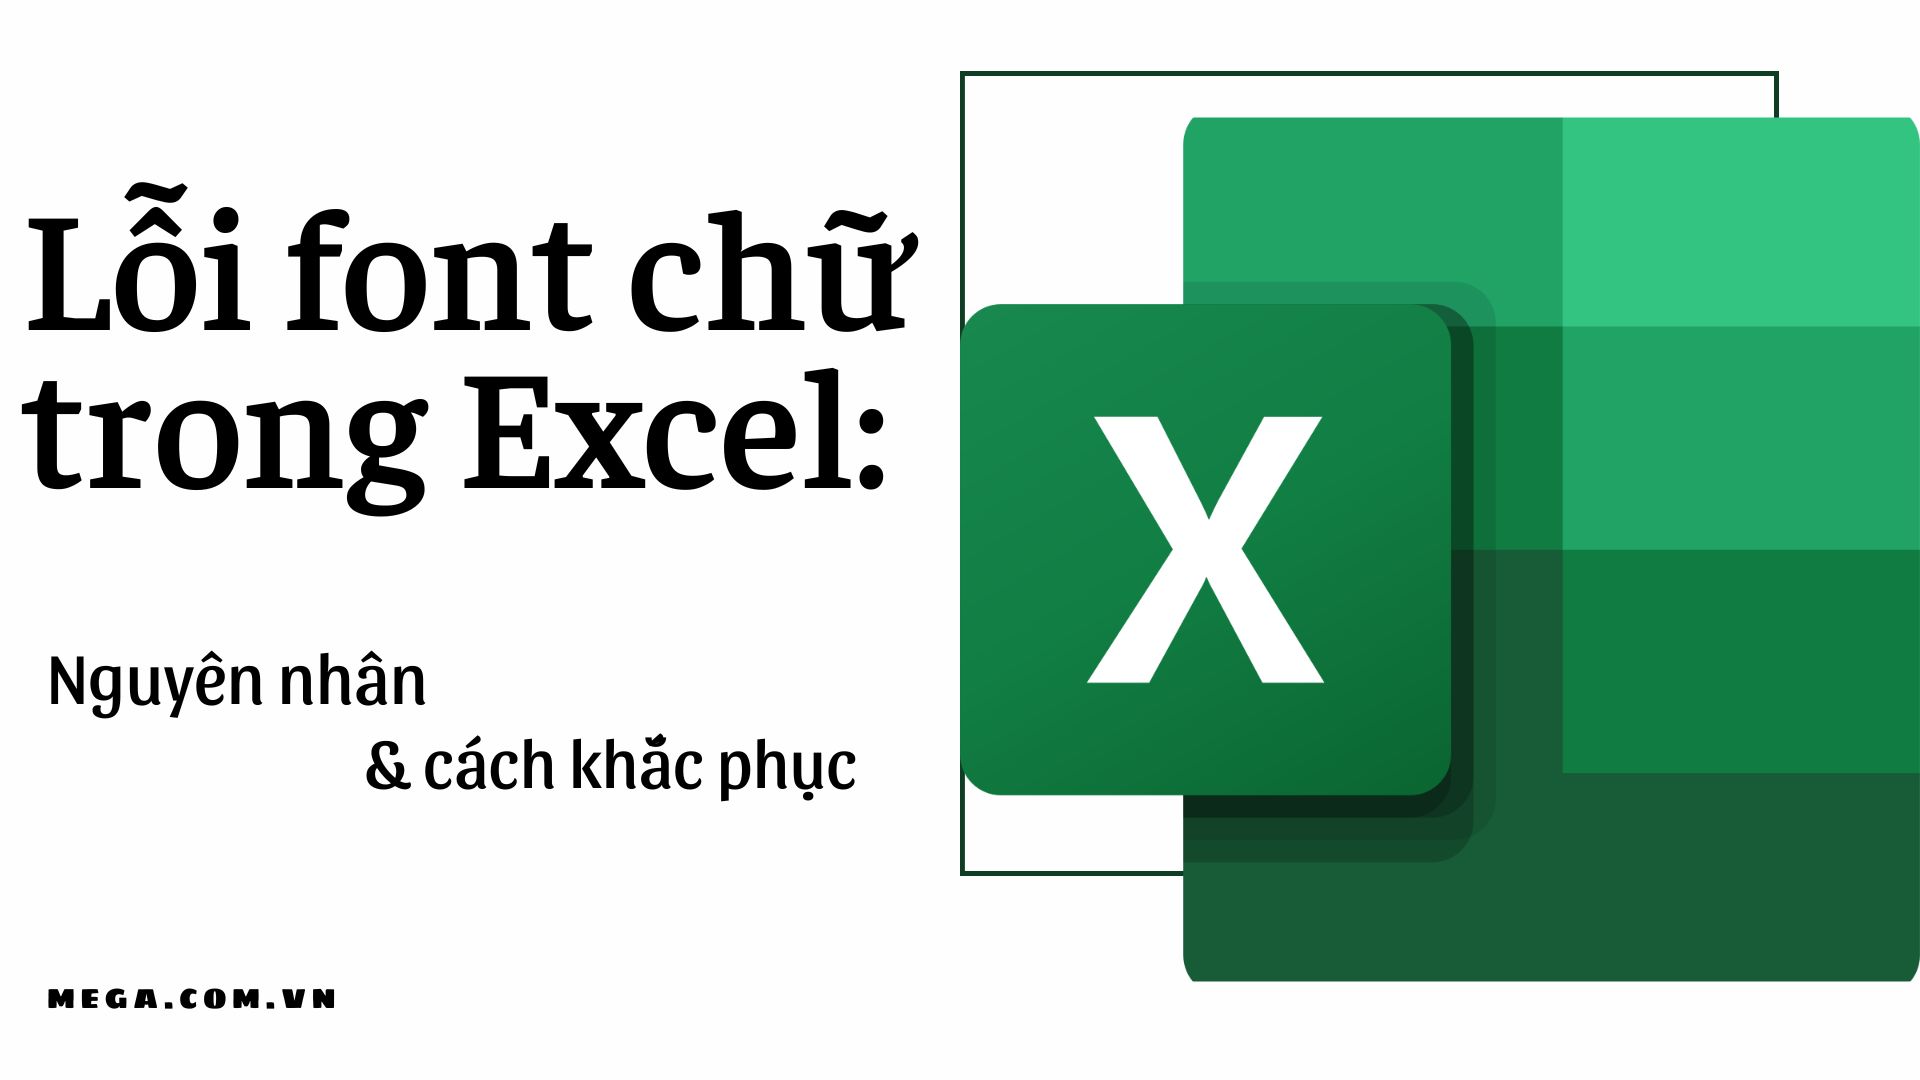 Excel lỗi font chữ: Cách khắc phục lỗi font chữ trong Excel
Cùng thời gian phát triển công nghệ, Excel cũng ngày càng đa dạng và tiên tiến hơn. Tuy nhiên, đôi khi vẫn có những lỗi font chữ xảy ra trong quá trình sử dụng. Đừng lo lắng, chỉ với vài thao tác đơn giản, bạn sẽ có thể khắc phục hoàn toàn lỗi font chữ trong Excel và tiếp tục sử dụng một cách thuận tiện nhất. Nhấn vào hình ảnh để tìm hiểu cách khắc phục lỗi font chữ trong Excel nhé!